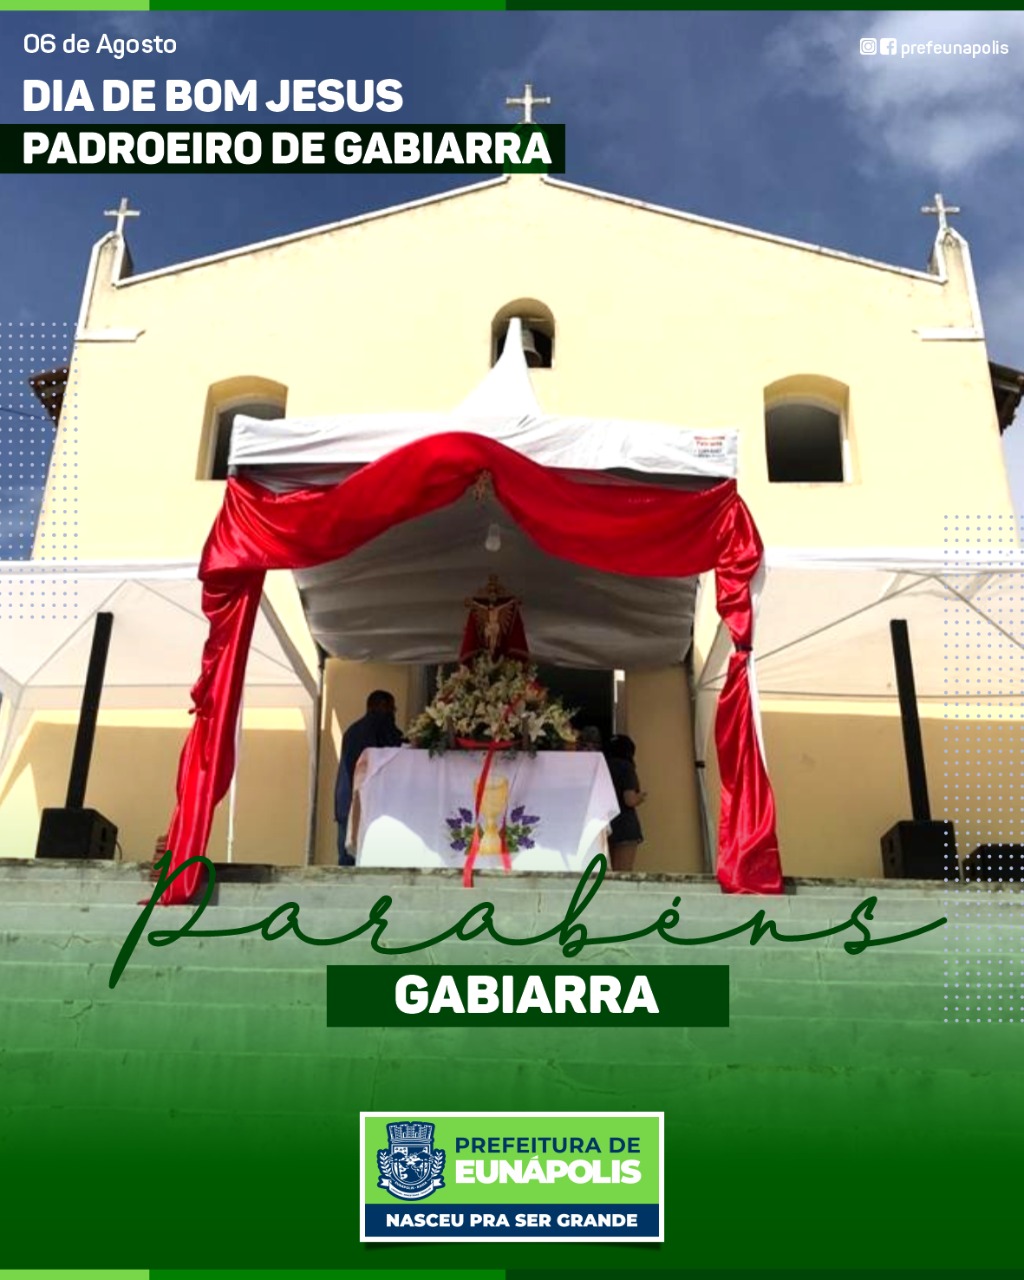 Distrito de Gabiarra celebra Dia do Padroeiro Bom Jesus 10